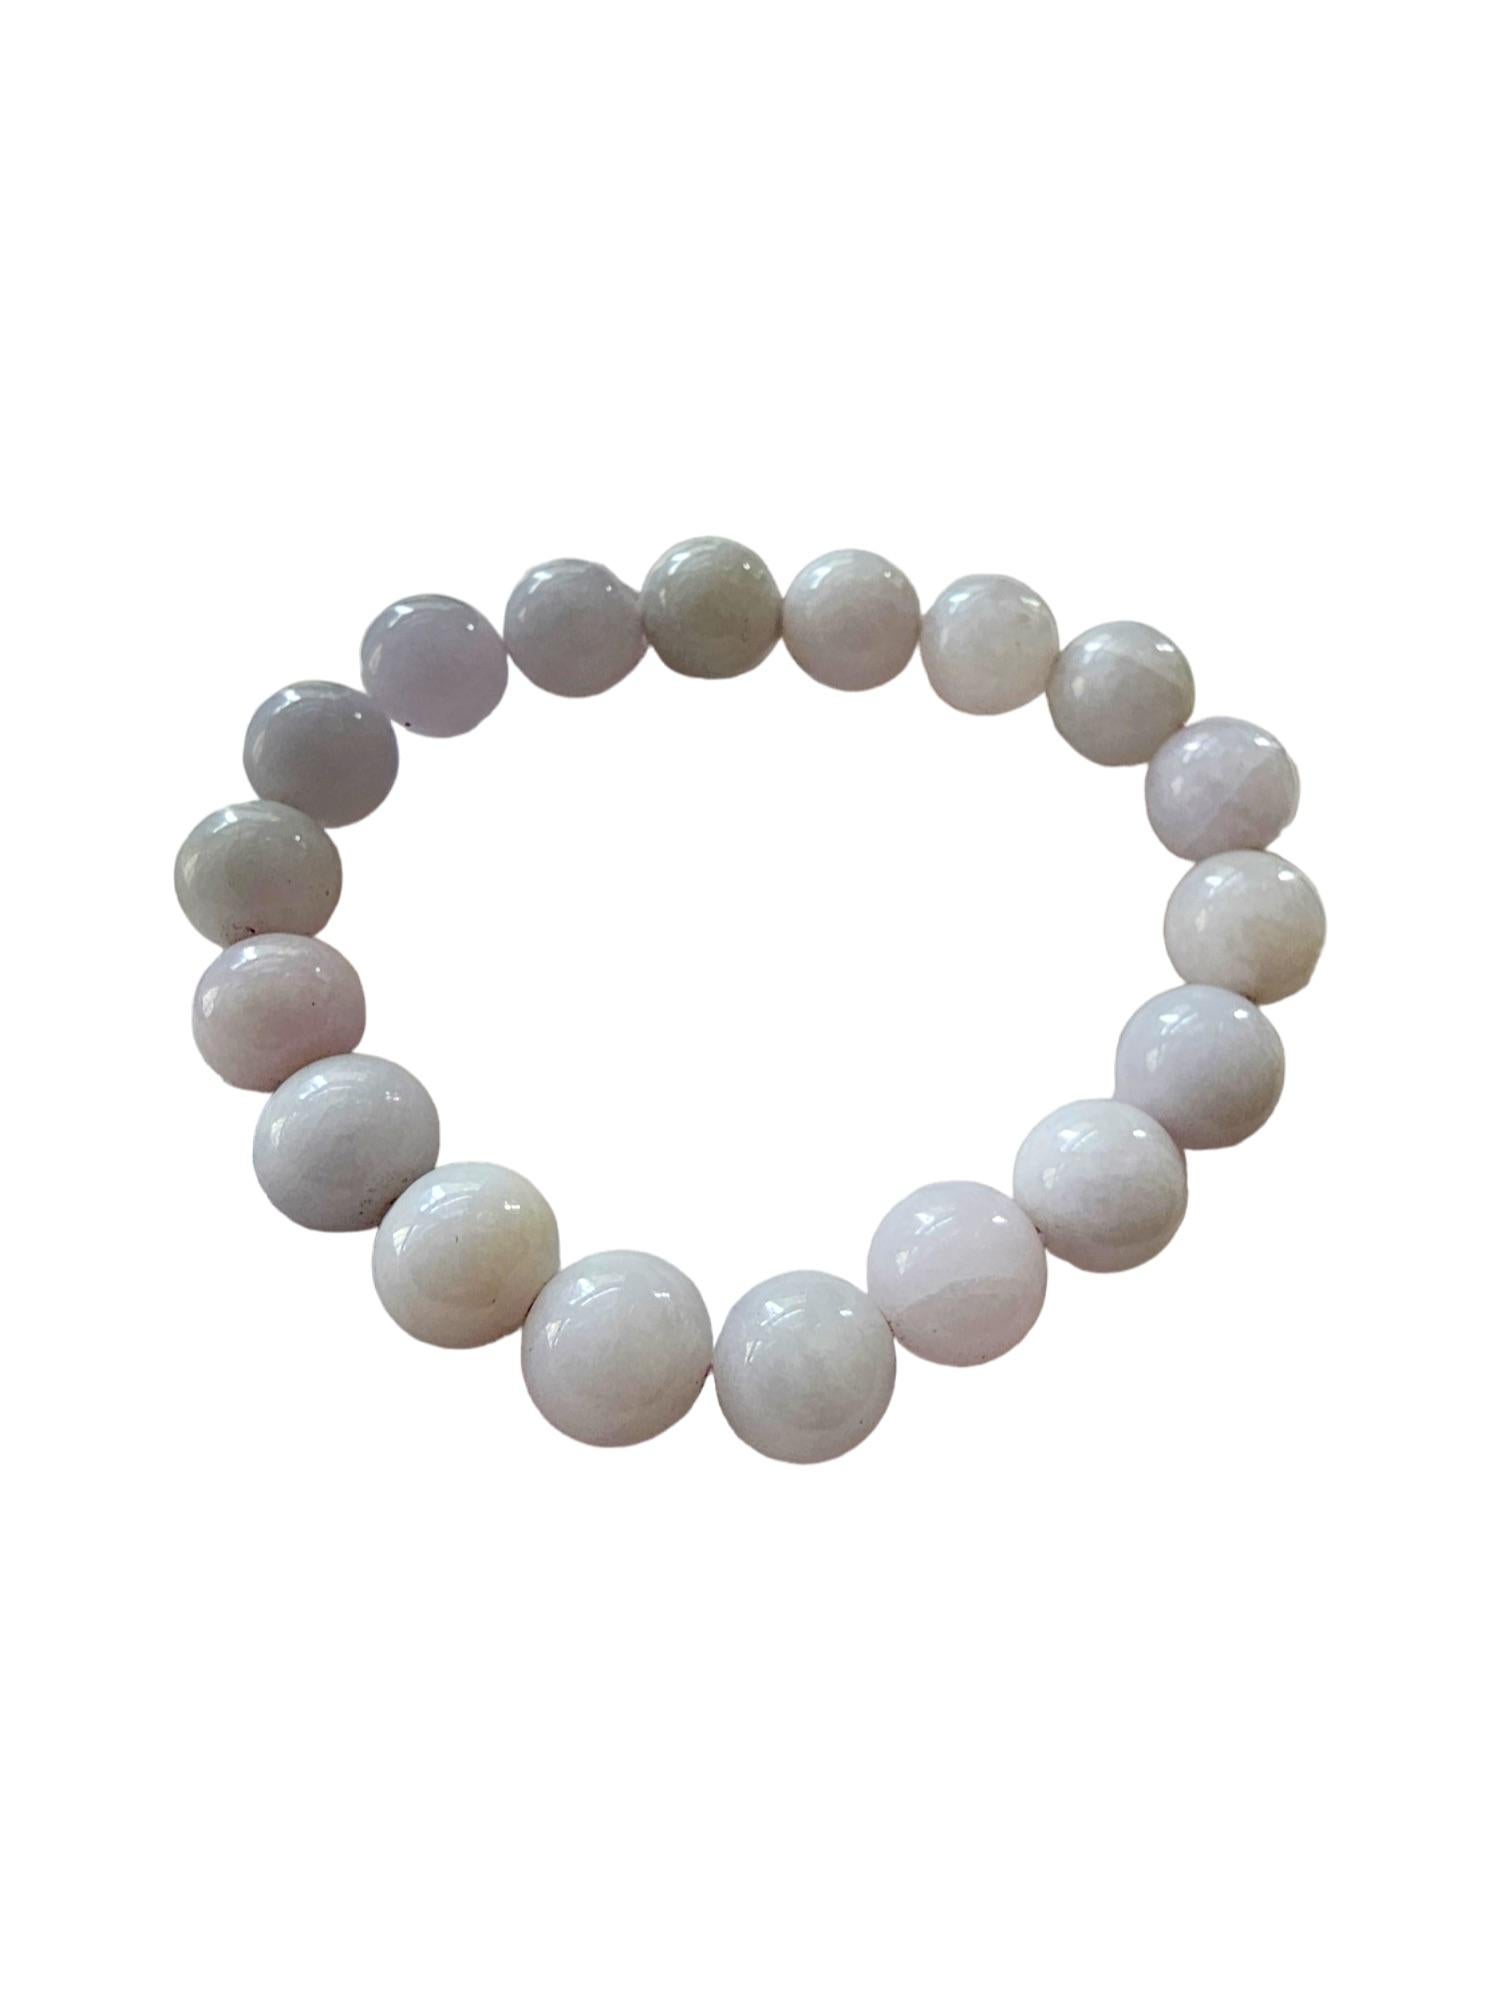 Bracelet de perles A-Jade birman impérial lavande (10 mm chacune x 18 perles) 06003 

10mm chacune, 18 perles de jadéite lavande parfaitement calibrées. Ce bracelet en jadéite A de Birmanie est l'une des teintes naturelles les plus rares de la